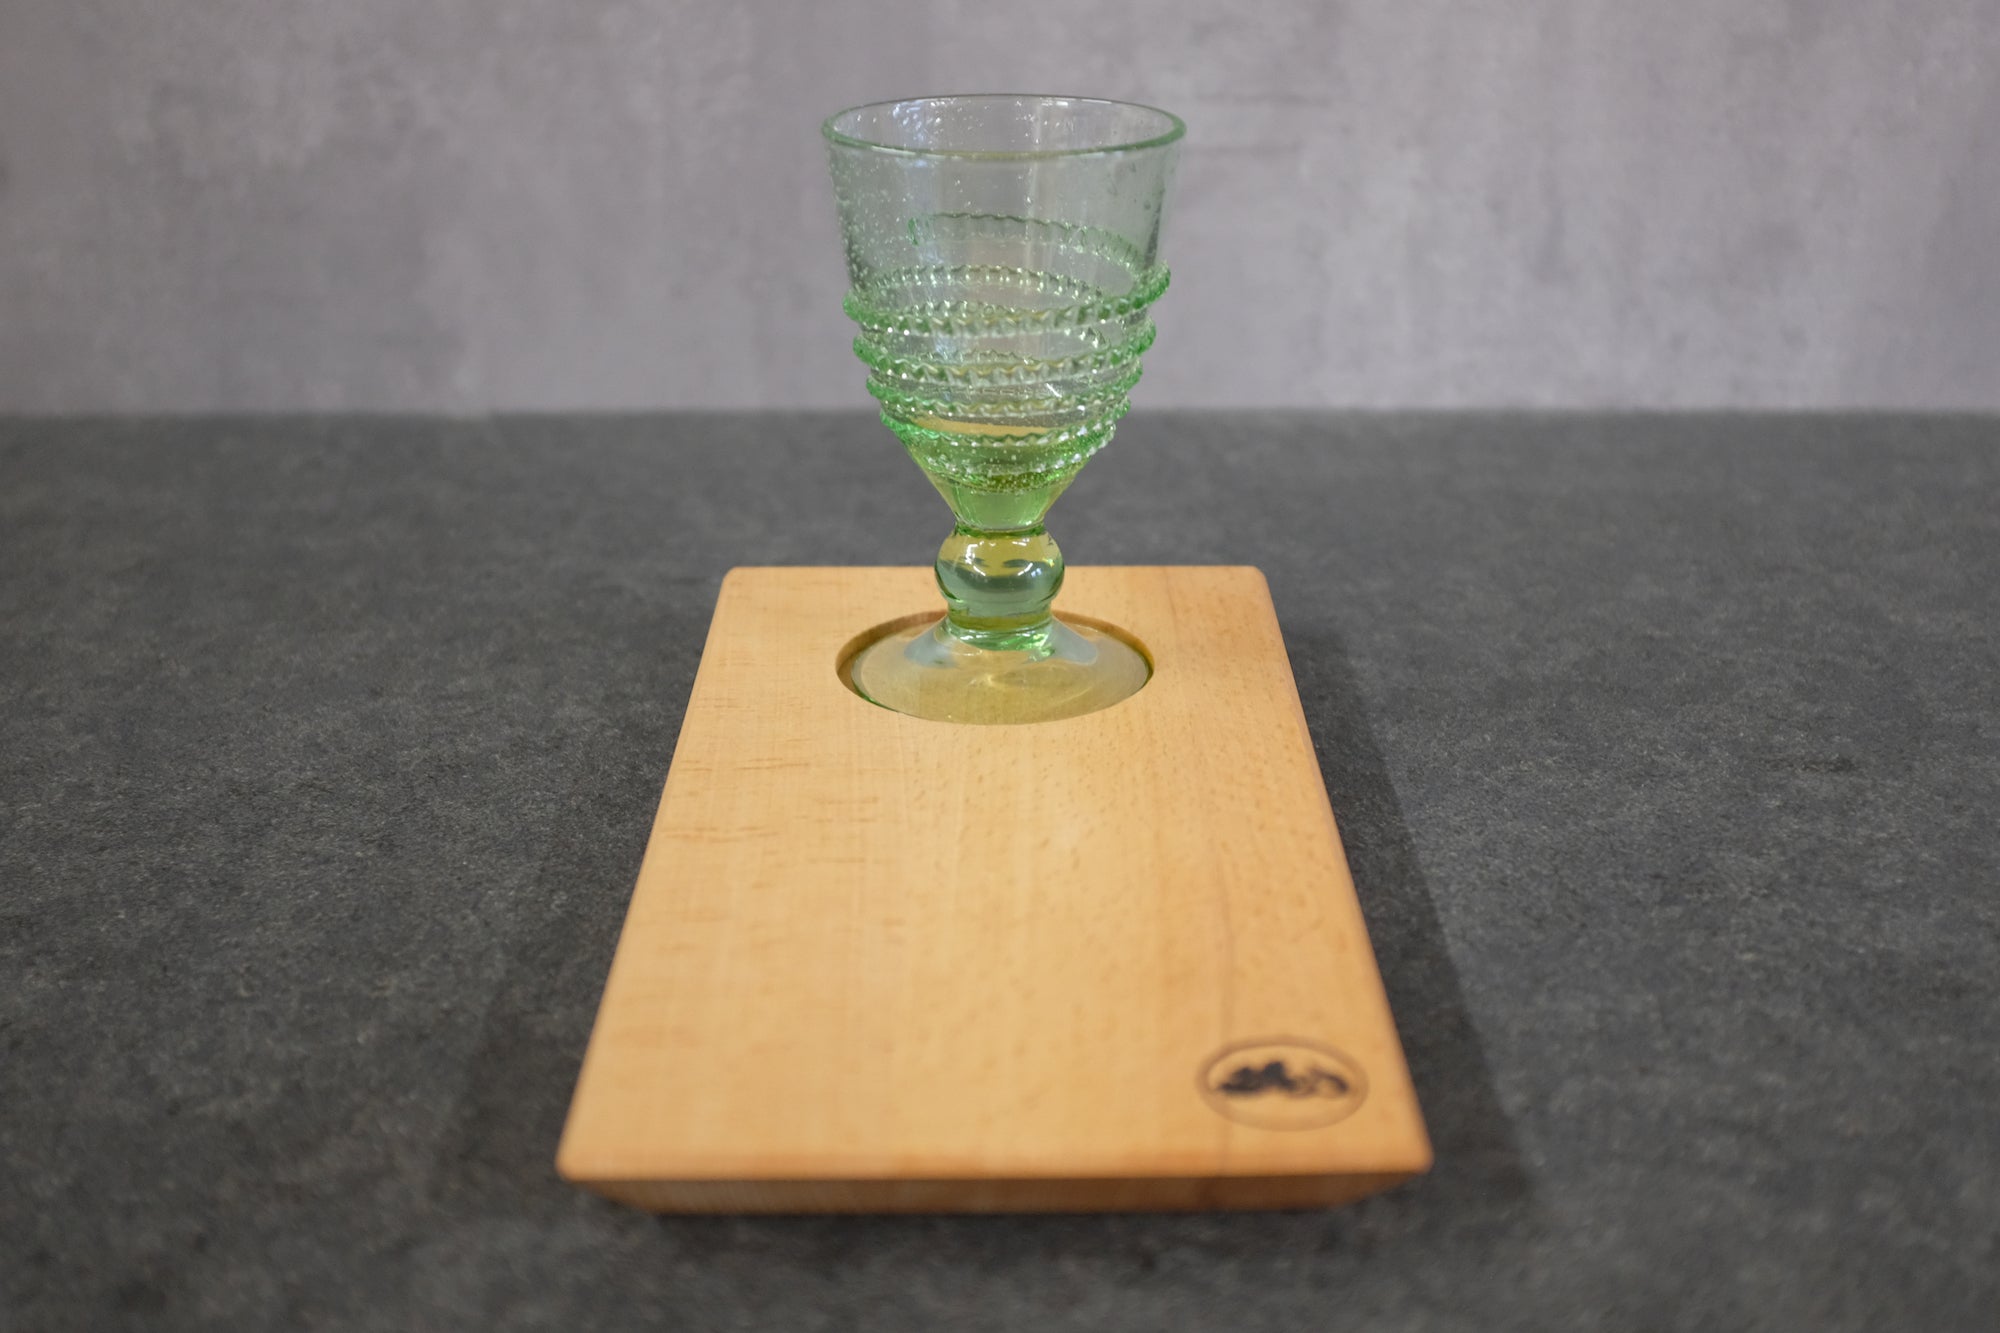 Weinglas aus Waldglas von der Farbglashütte Lauscha auf einem Holztablett aus Buche.